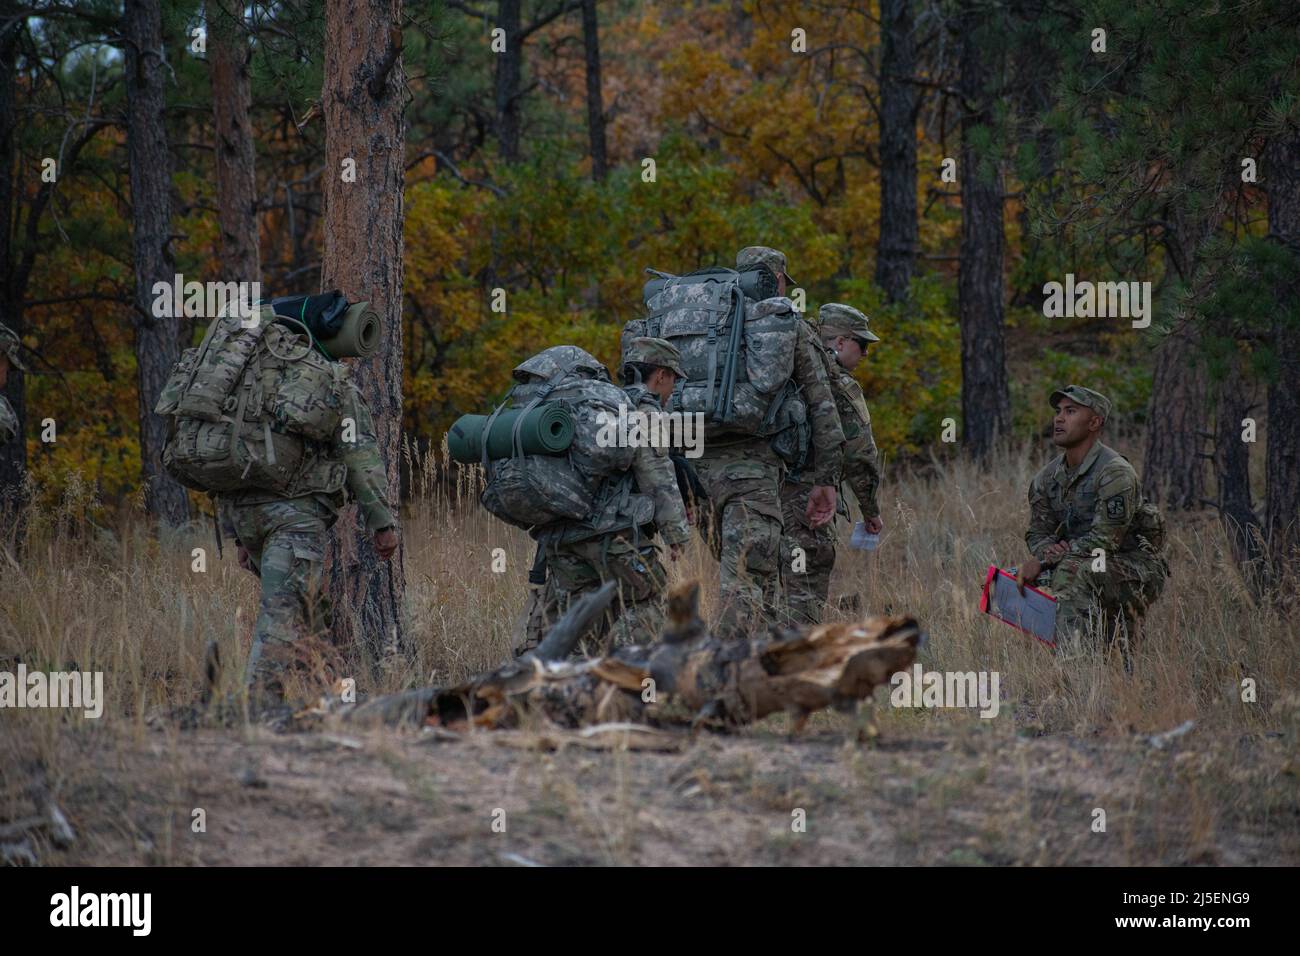 Los cadetes asignados al Batallón de Ranger de Montaña, 5th Brigade Army ROTC, en la Universidad de Colorado en Colorado Springs participan en el Ejercicio de Entrenamiento de Campo de Otoño (FTX) del 8 al 10 de octubre de 2021, en el Área de Entrenamiento de Jacks Valley. Los cadetes se centraron en tácticas de unidades pequeñas durante dos días, incluyendo el curso de reacción de los líderes, carriles de ejercicio de entrenamiento situacional (STX), un curso de obstáculos, y terminó con un ruck de 6 millas. (EE.UU Foto del ejército del personal Sgt. Daphney negro) Foto de stock